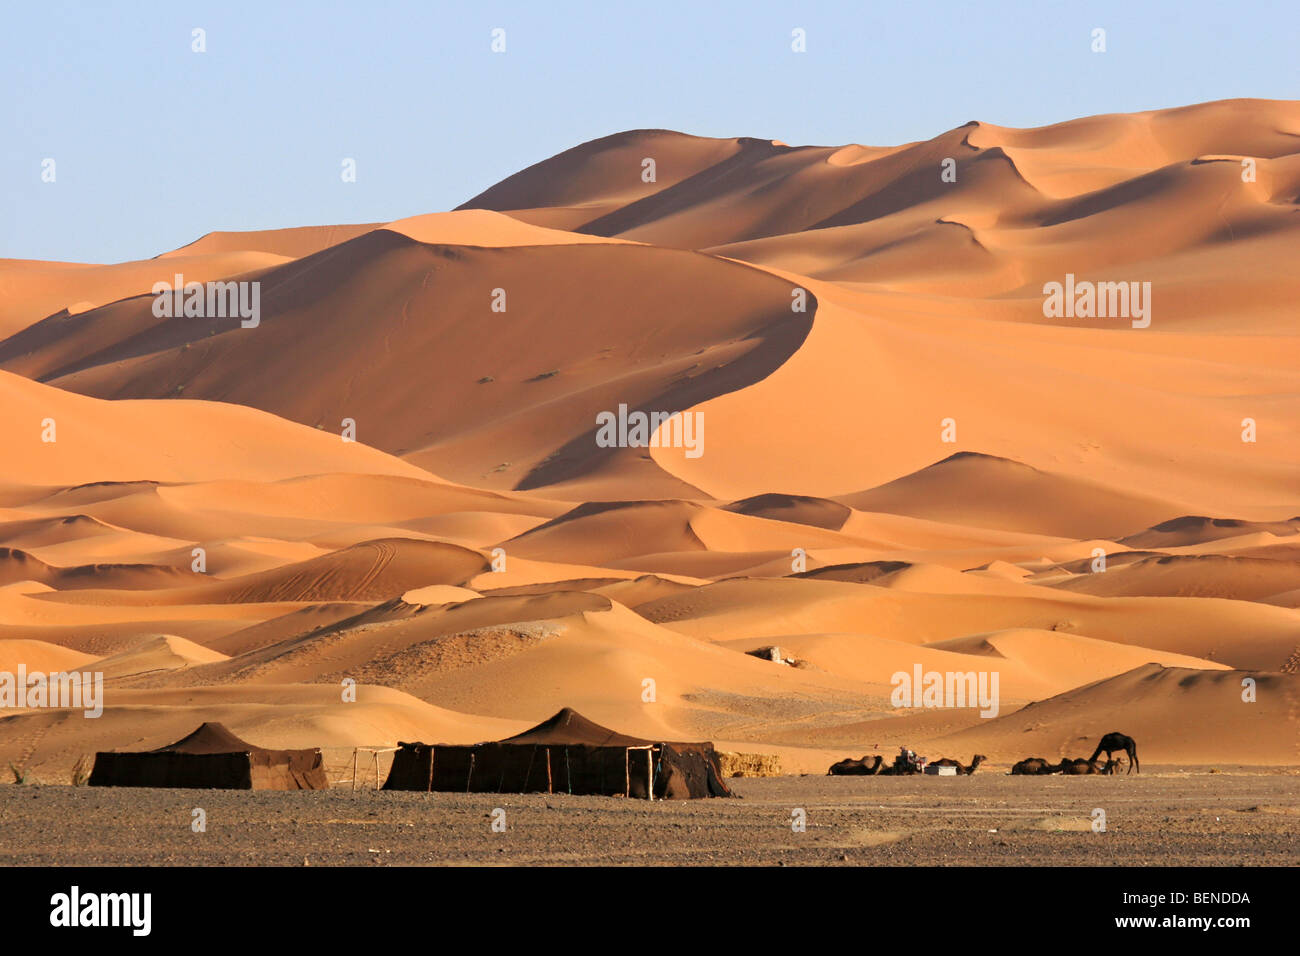 Tiendas beduinas y dromedario camellos (Camelus dromedarius) entre dunas de arena roja, Erg Chebbi, el desierto del Sahara, Marruecos, Norte de África Foto de stock